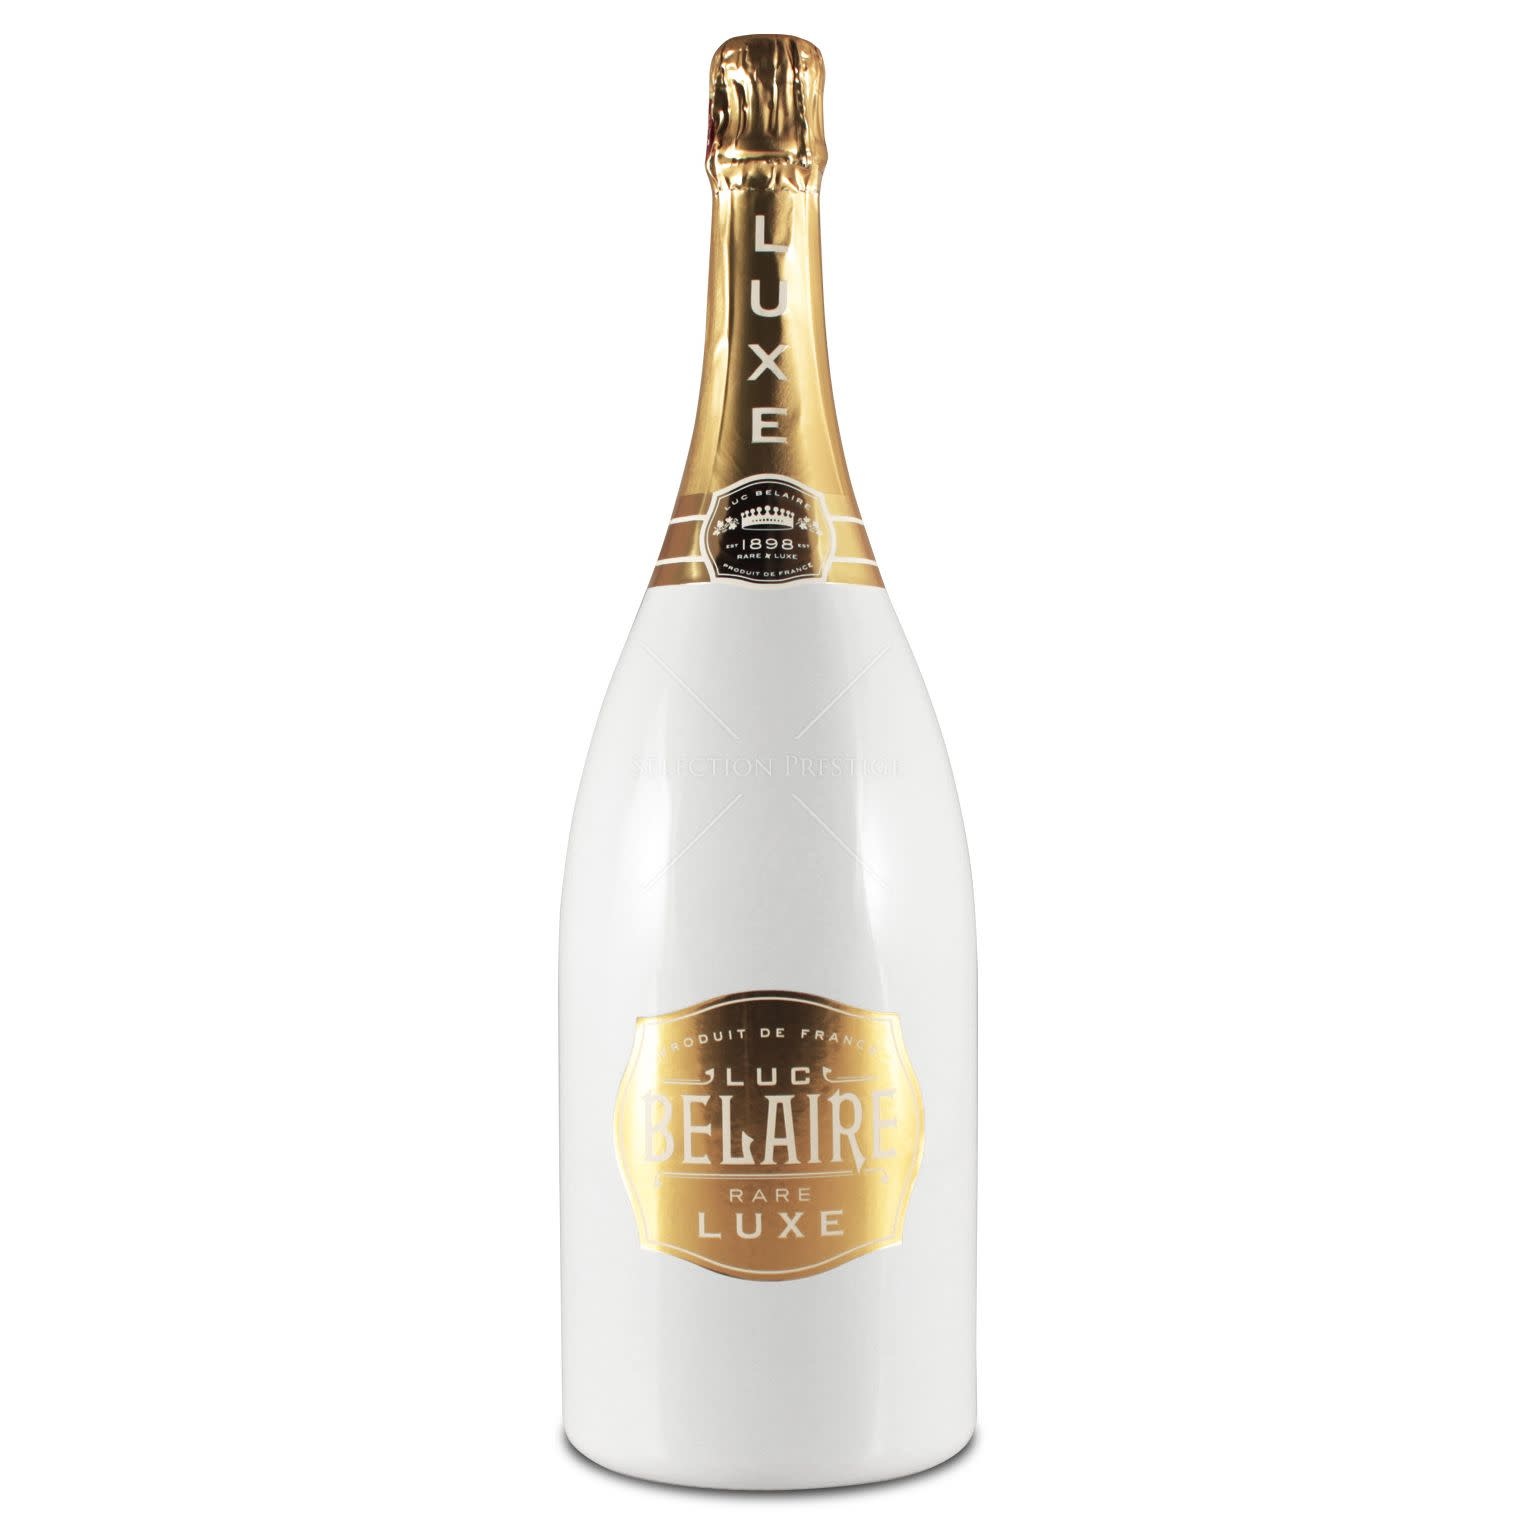 https://cdn.shoplightspeed.com/shops/637462/files/22847565/belaire-belaire-white-champagne.jpg